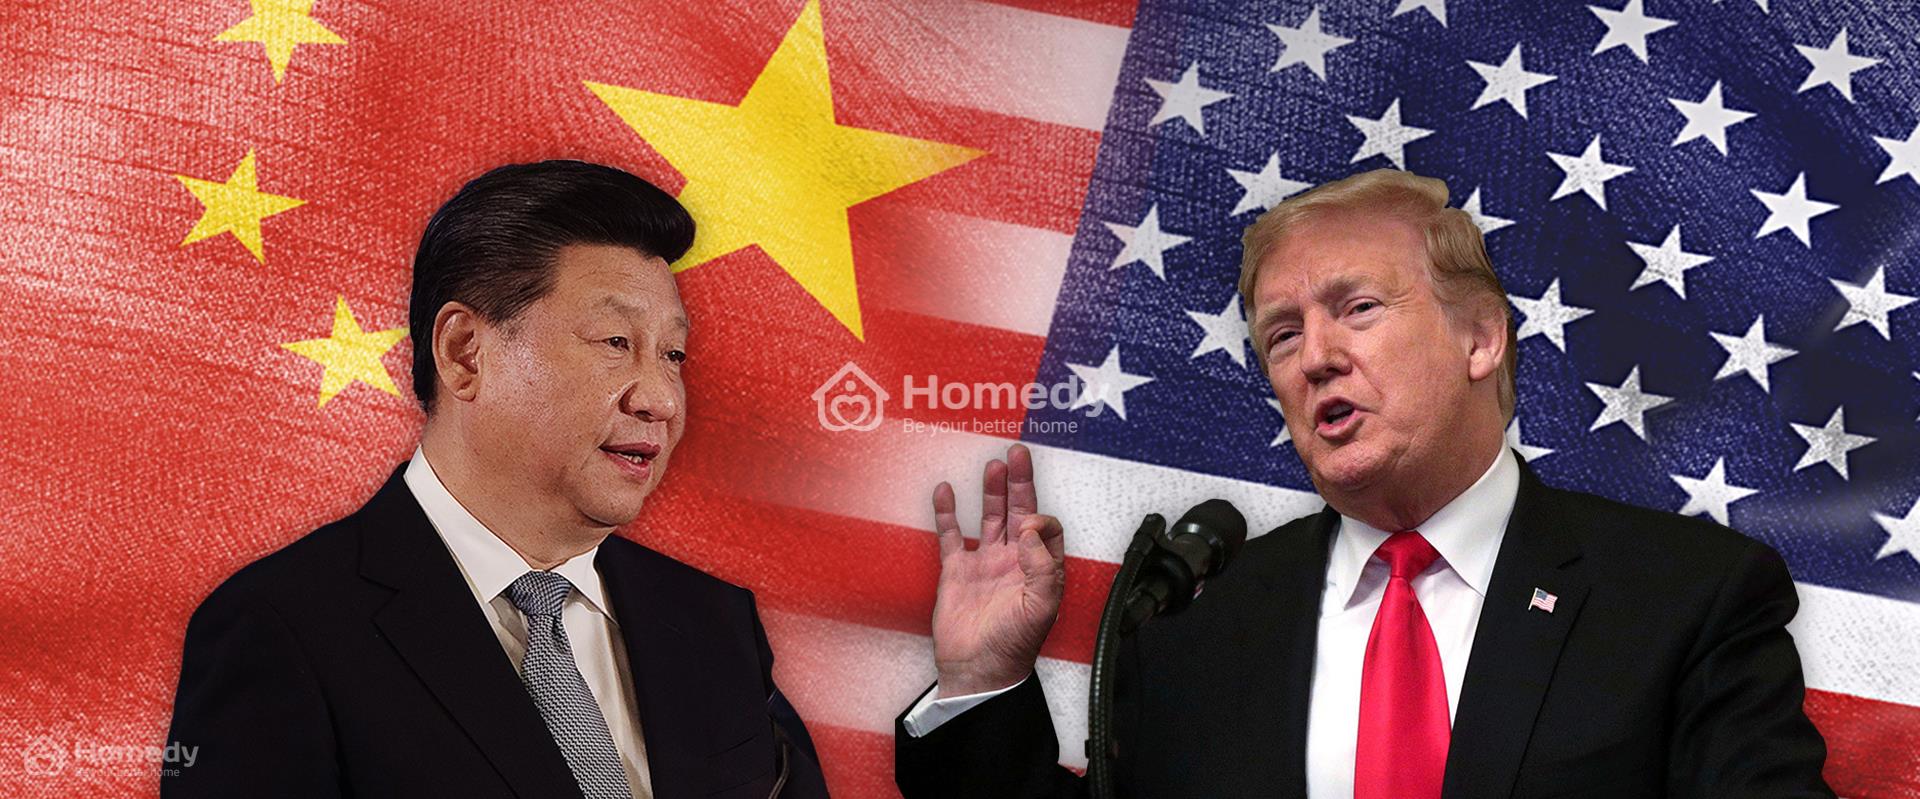 Căng thẳng thương mại Mỹ Trung